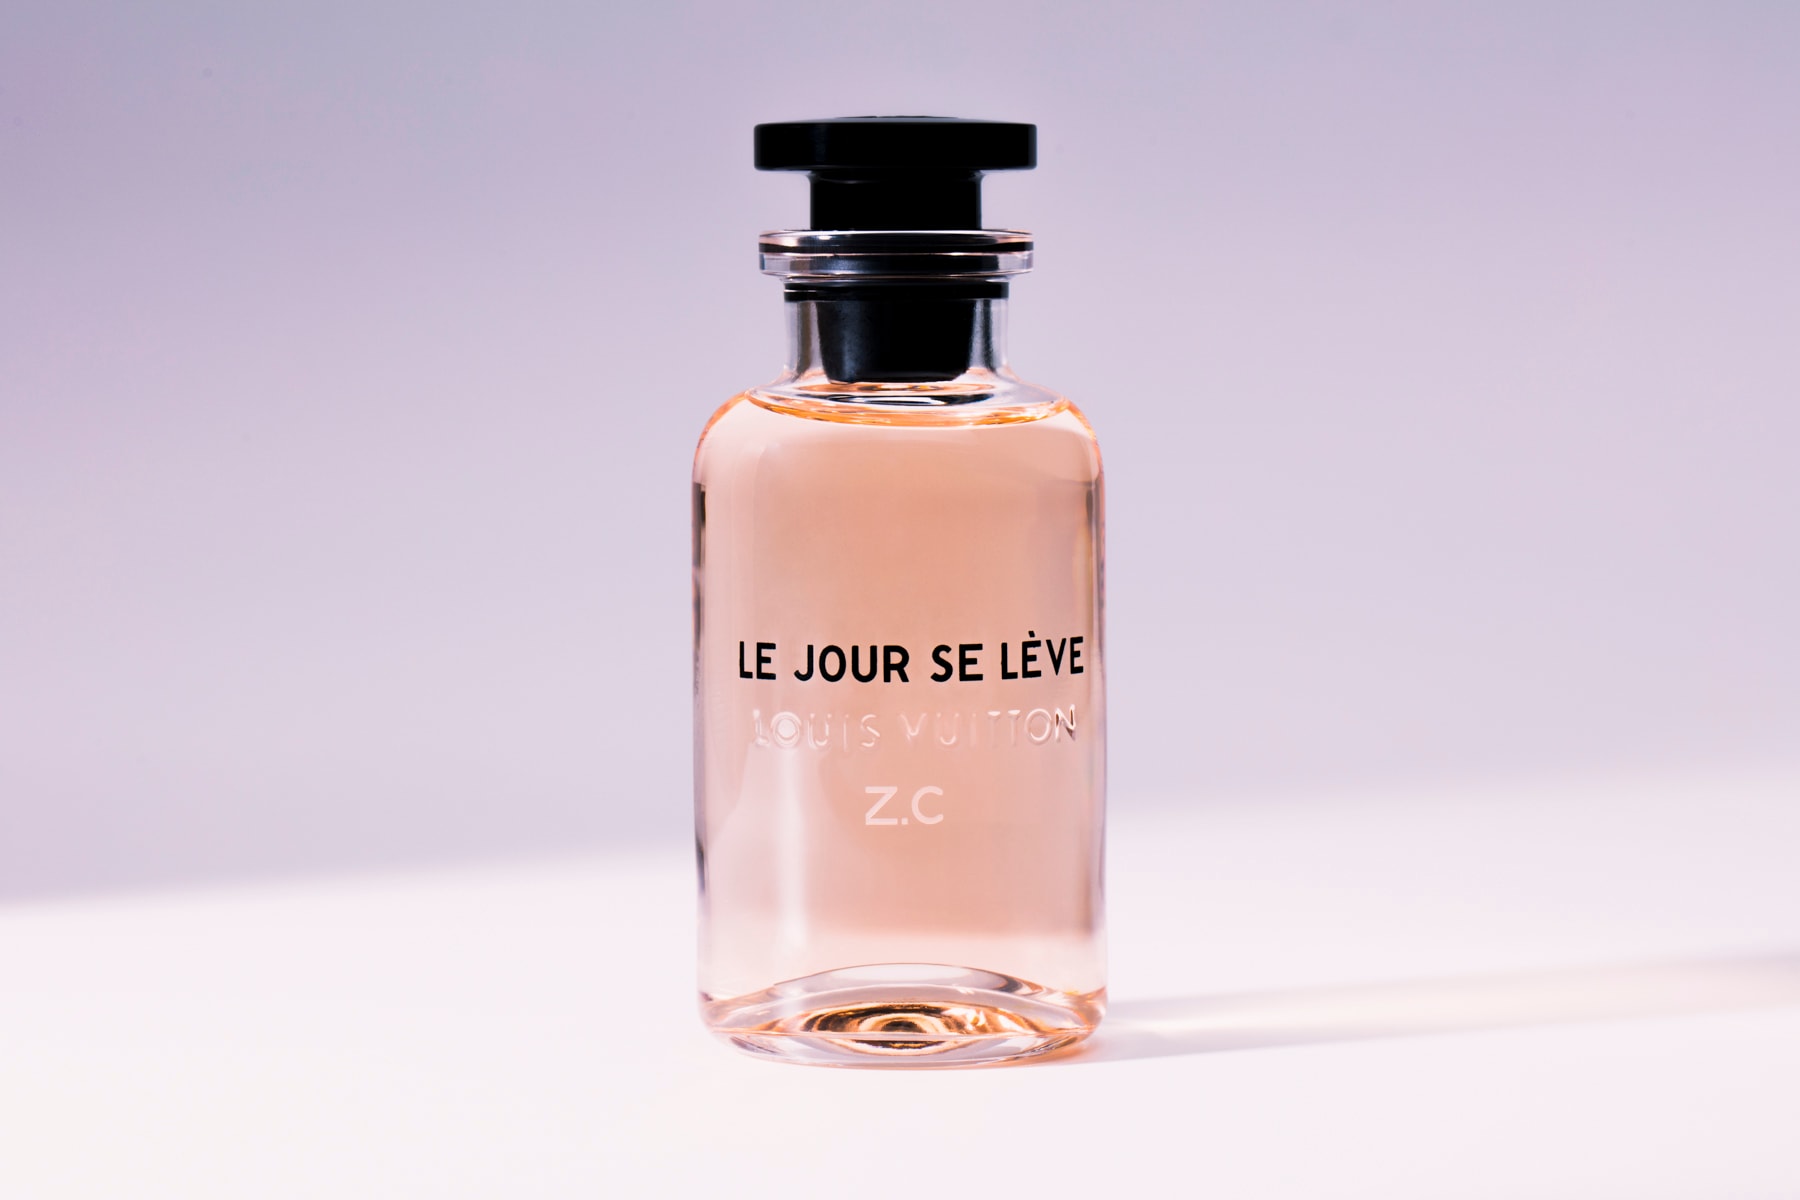 louis vuitton le jour se leve perfume fragrance scent custom bottle review Jacques Cavallier Belletrud